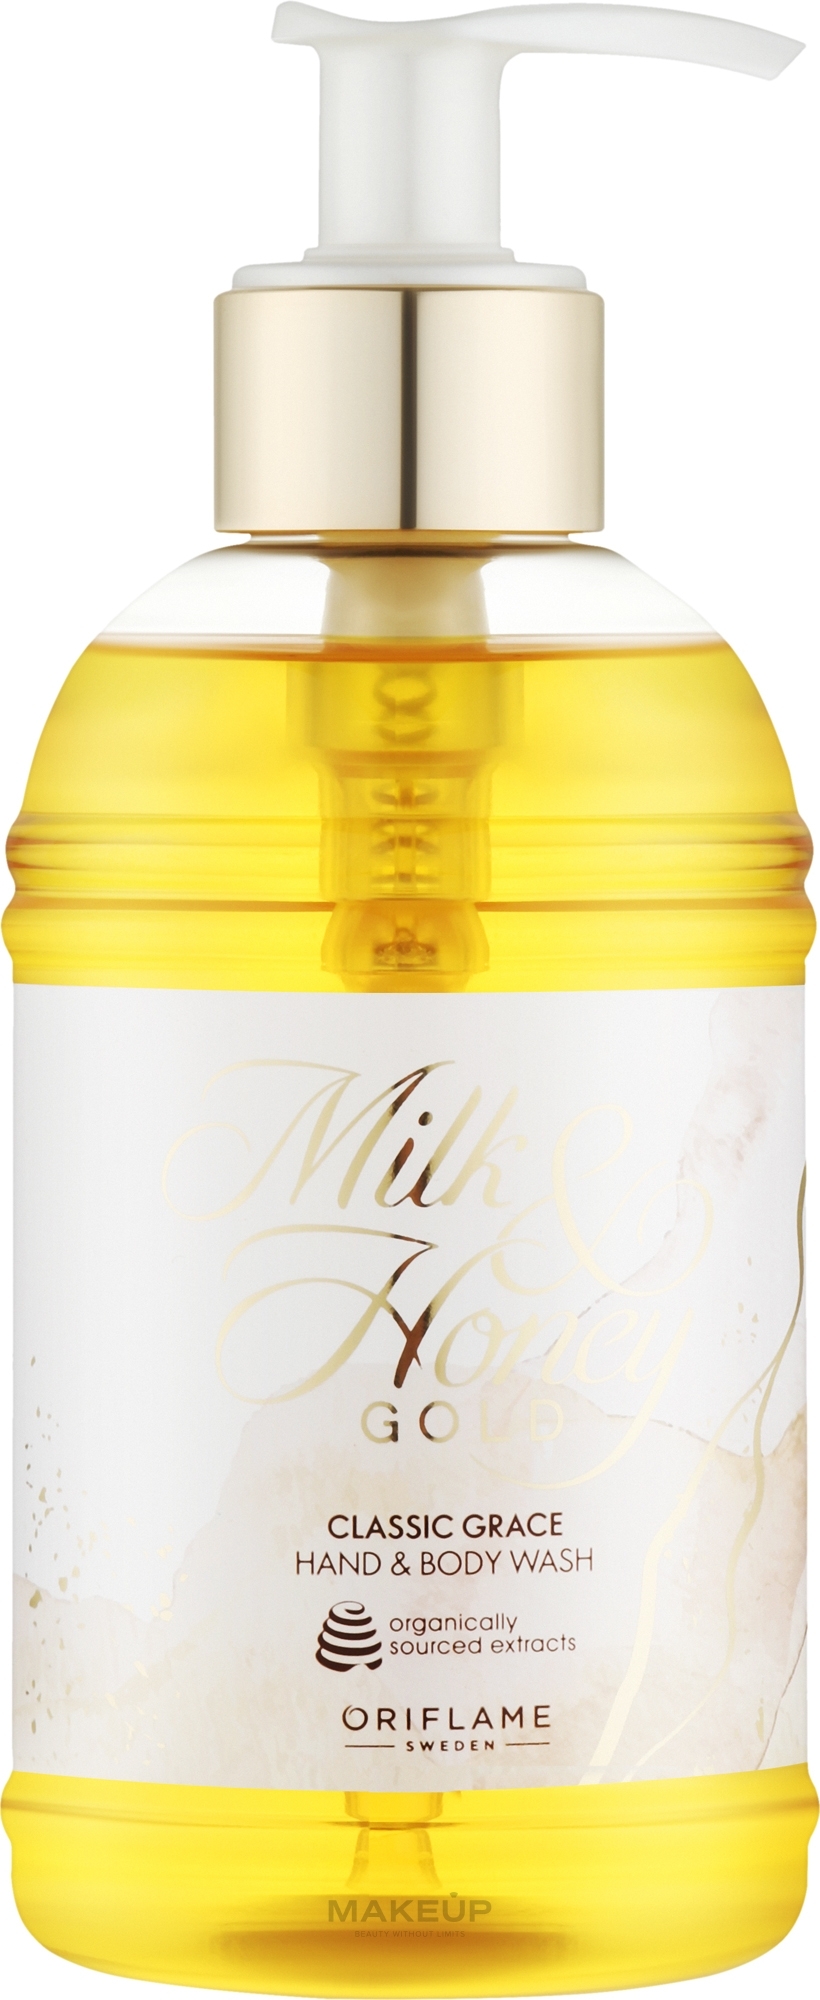 Flüssigseife für Hände und Körper Golden Classic - Oriflame Milk & Honey Gold Classic Grace Hand & Body Wash — Bild 300 ml